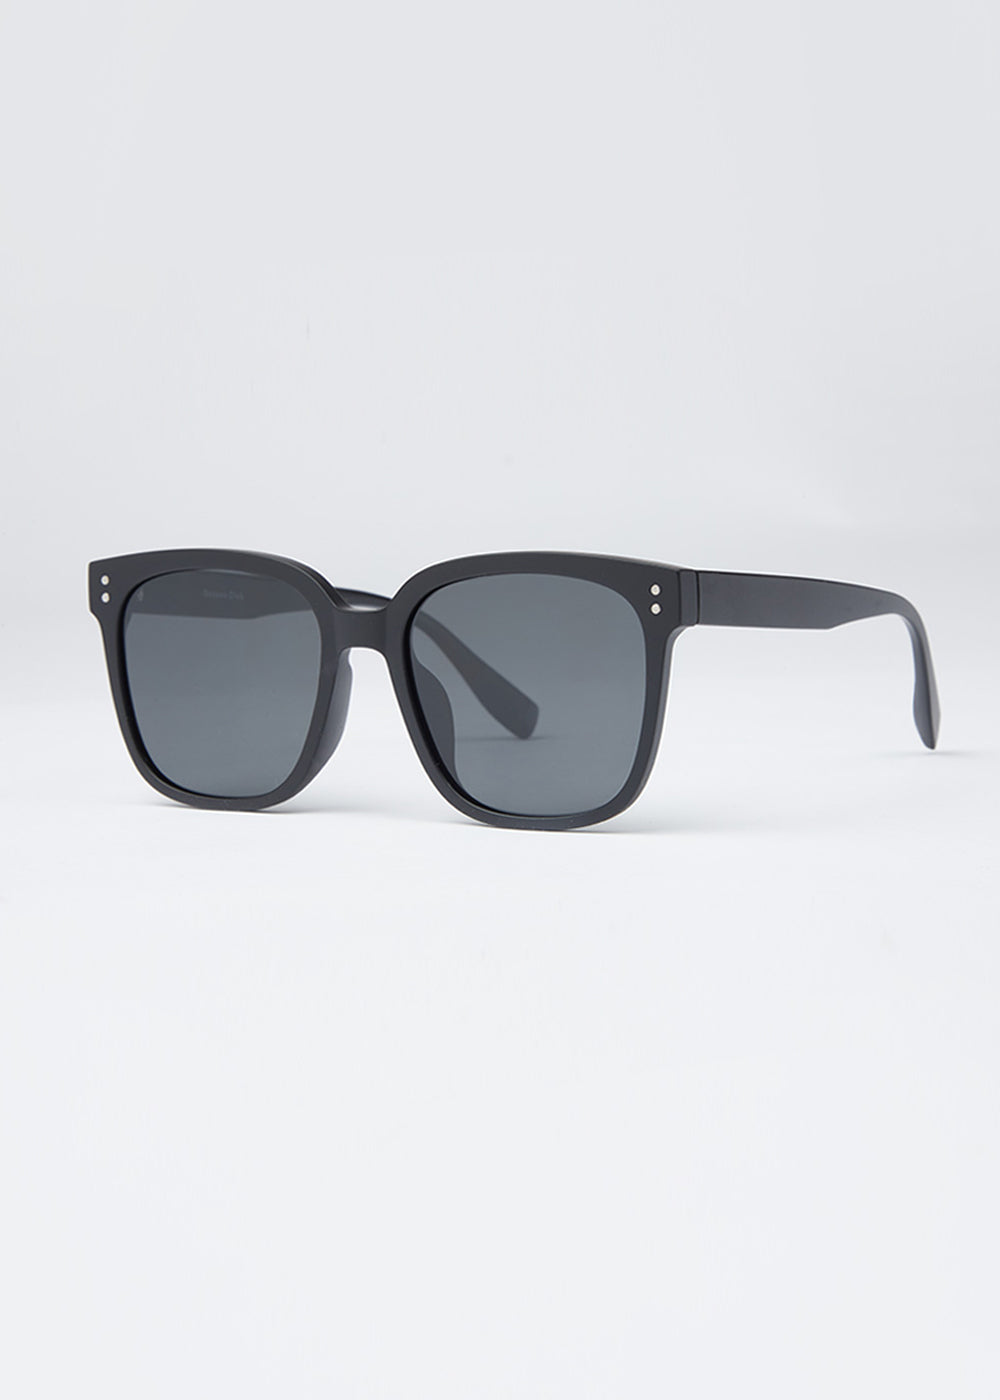 Black Unisex Square Sunglasses